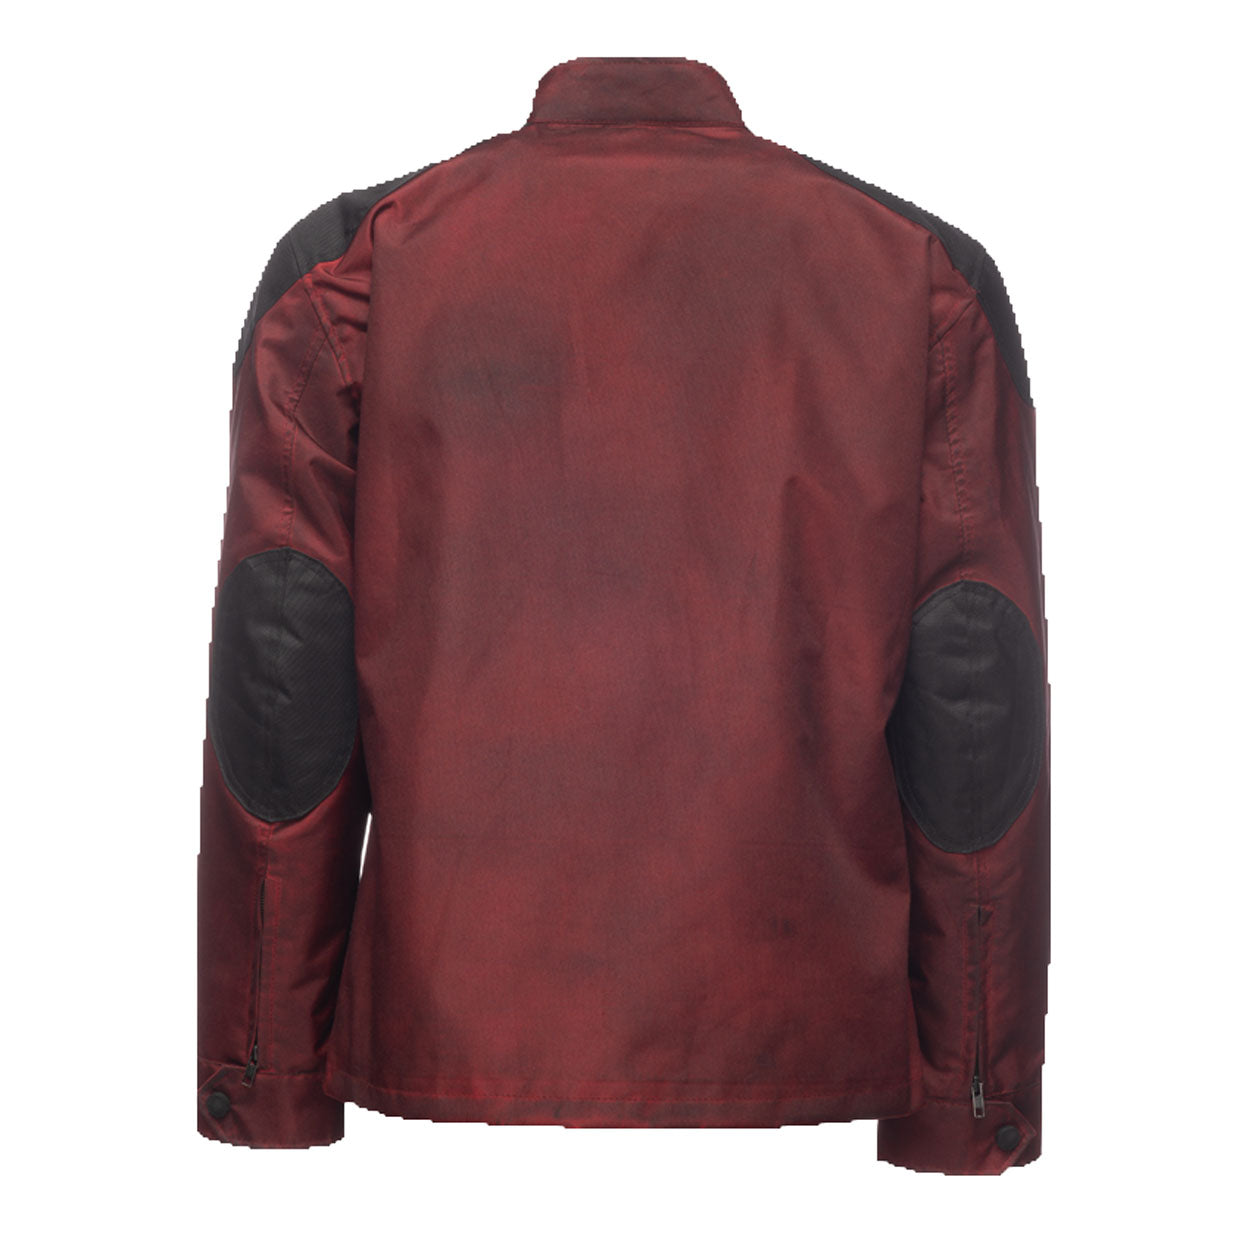 Antique red m65 windbreaker field jacket